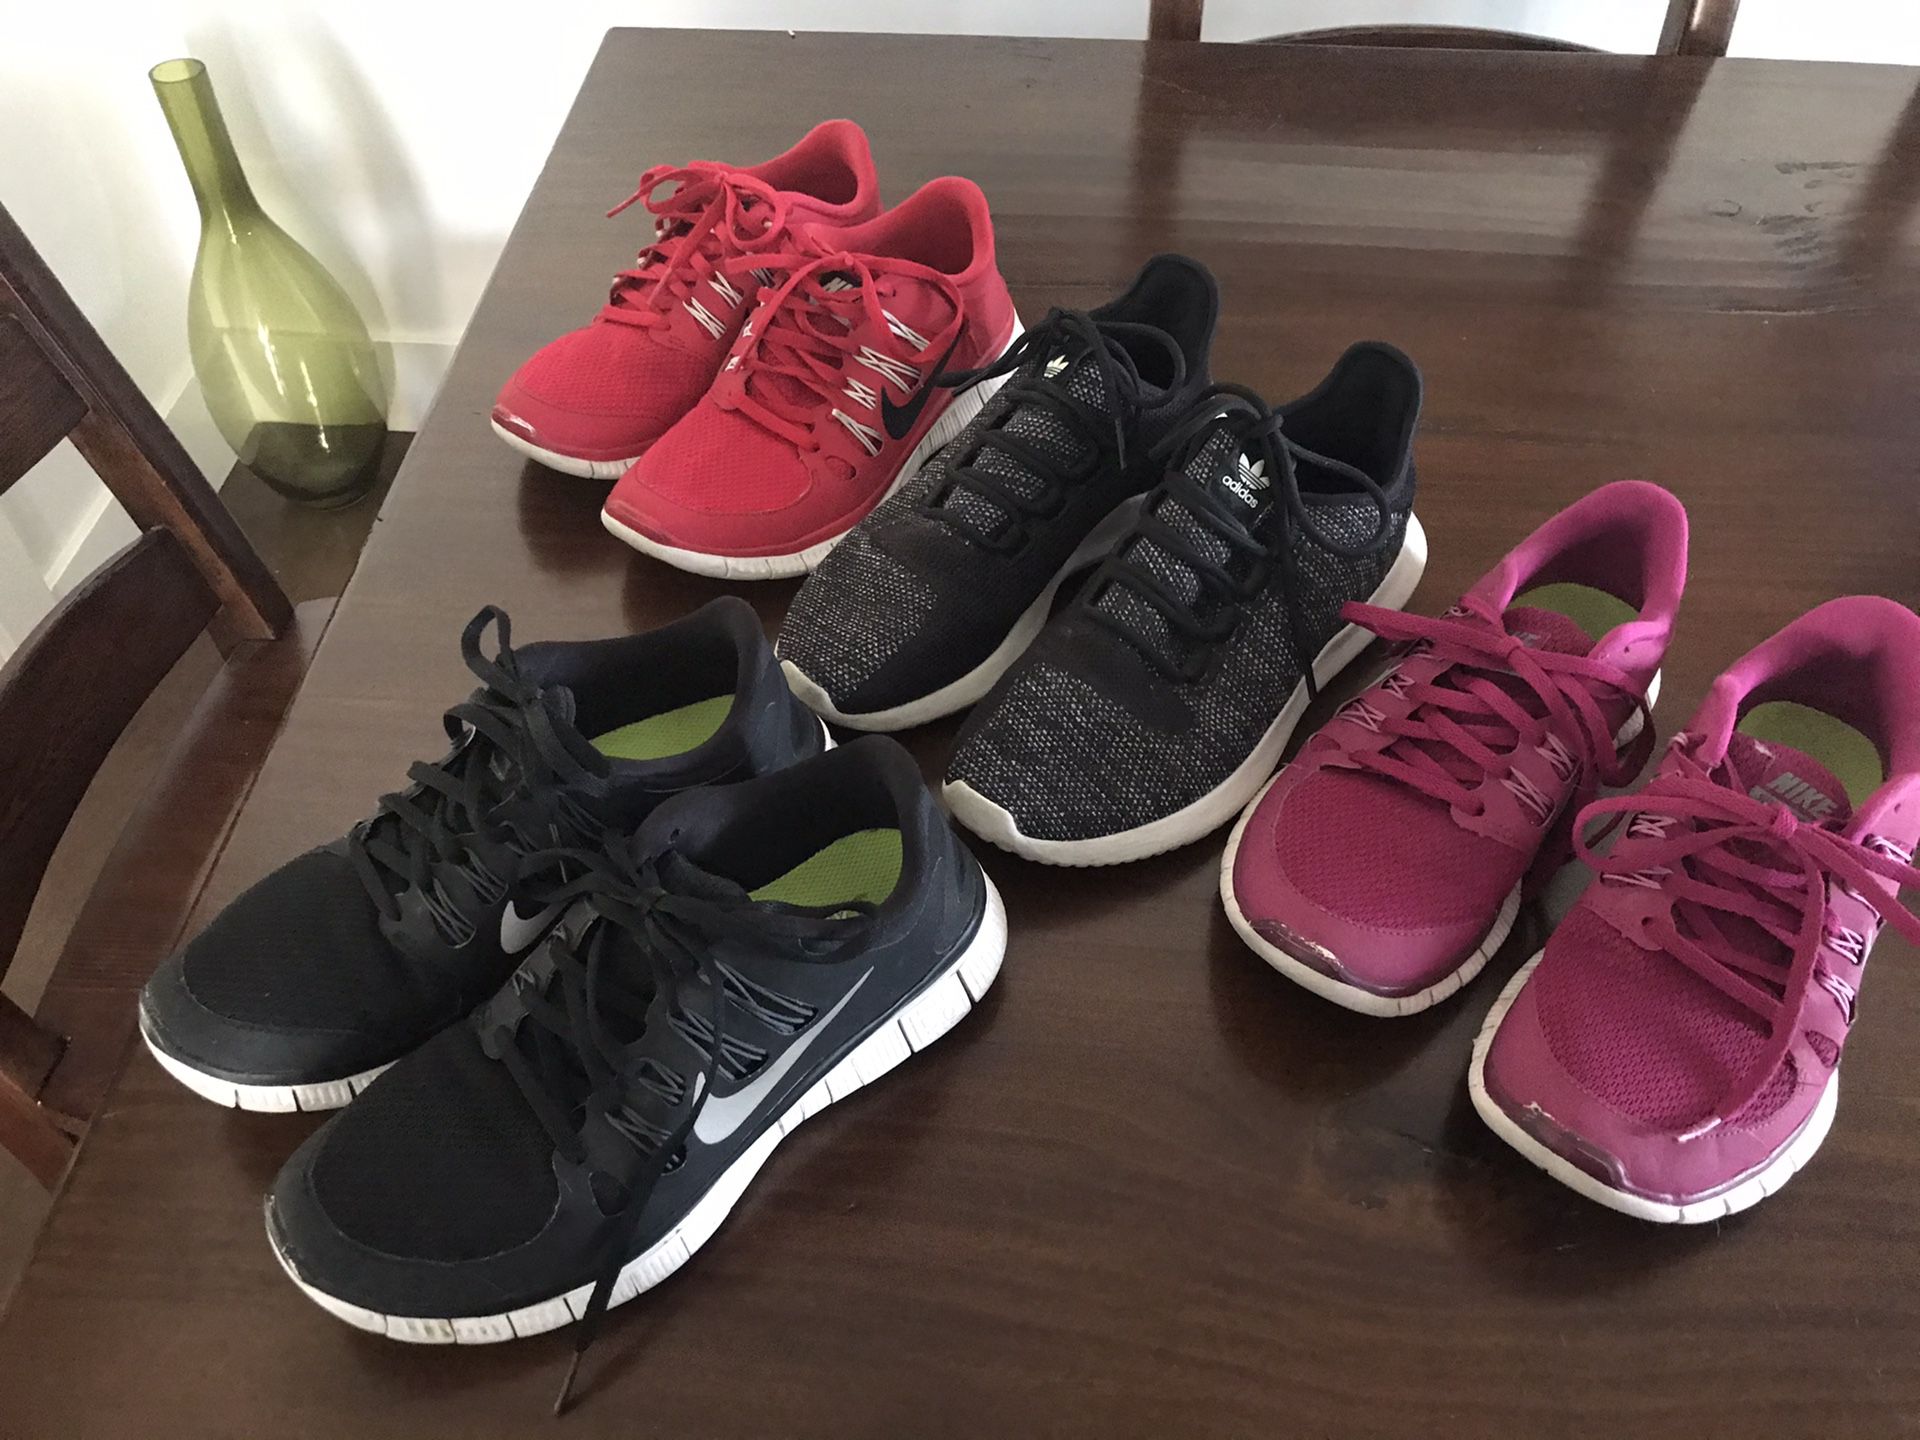 Women’s running shoes lot 7.5 Nike Adidas